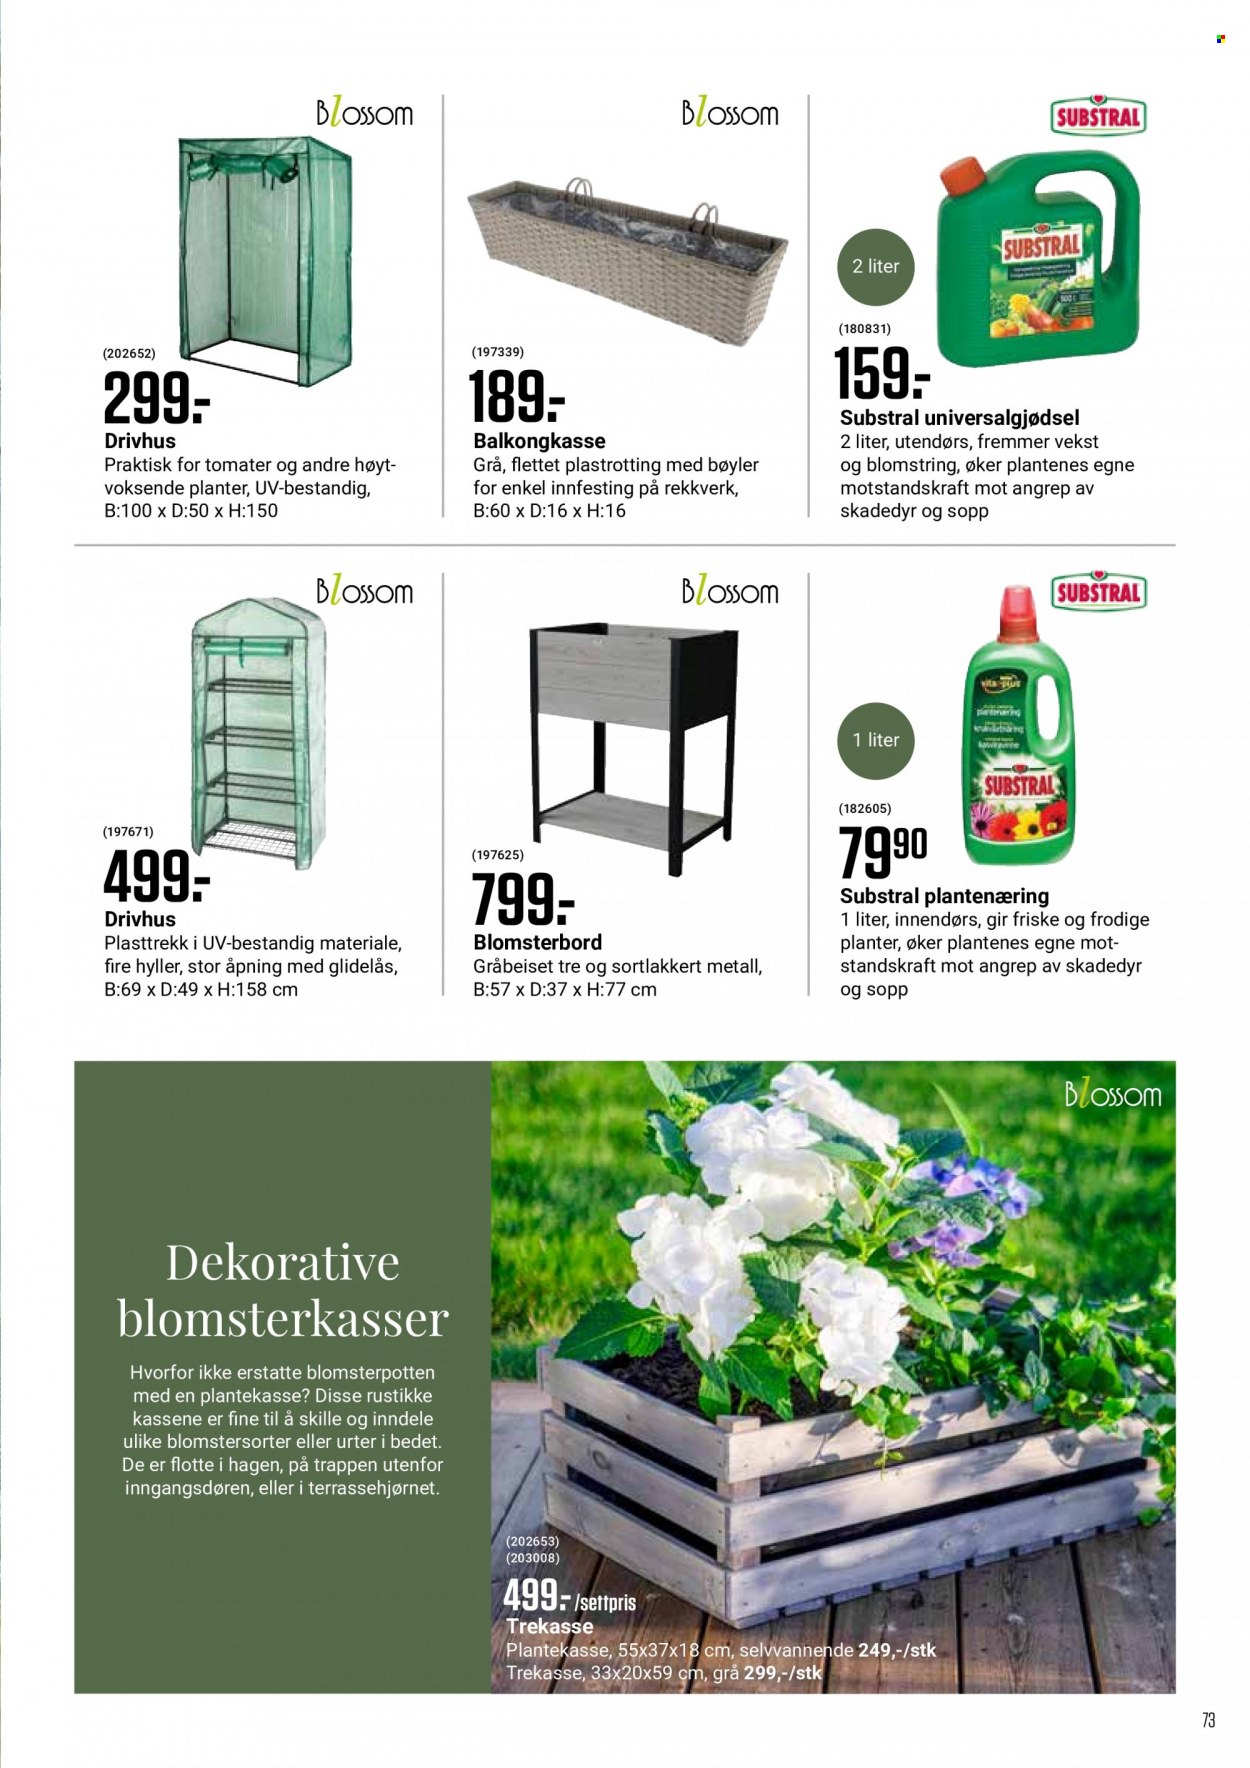 Kundeavis Europris - Produkter fra tilbudsaviser - hylle, planter, drivhus. Side 73.